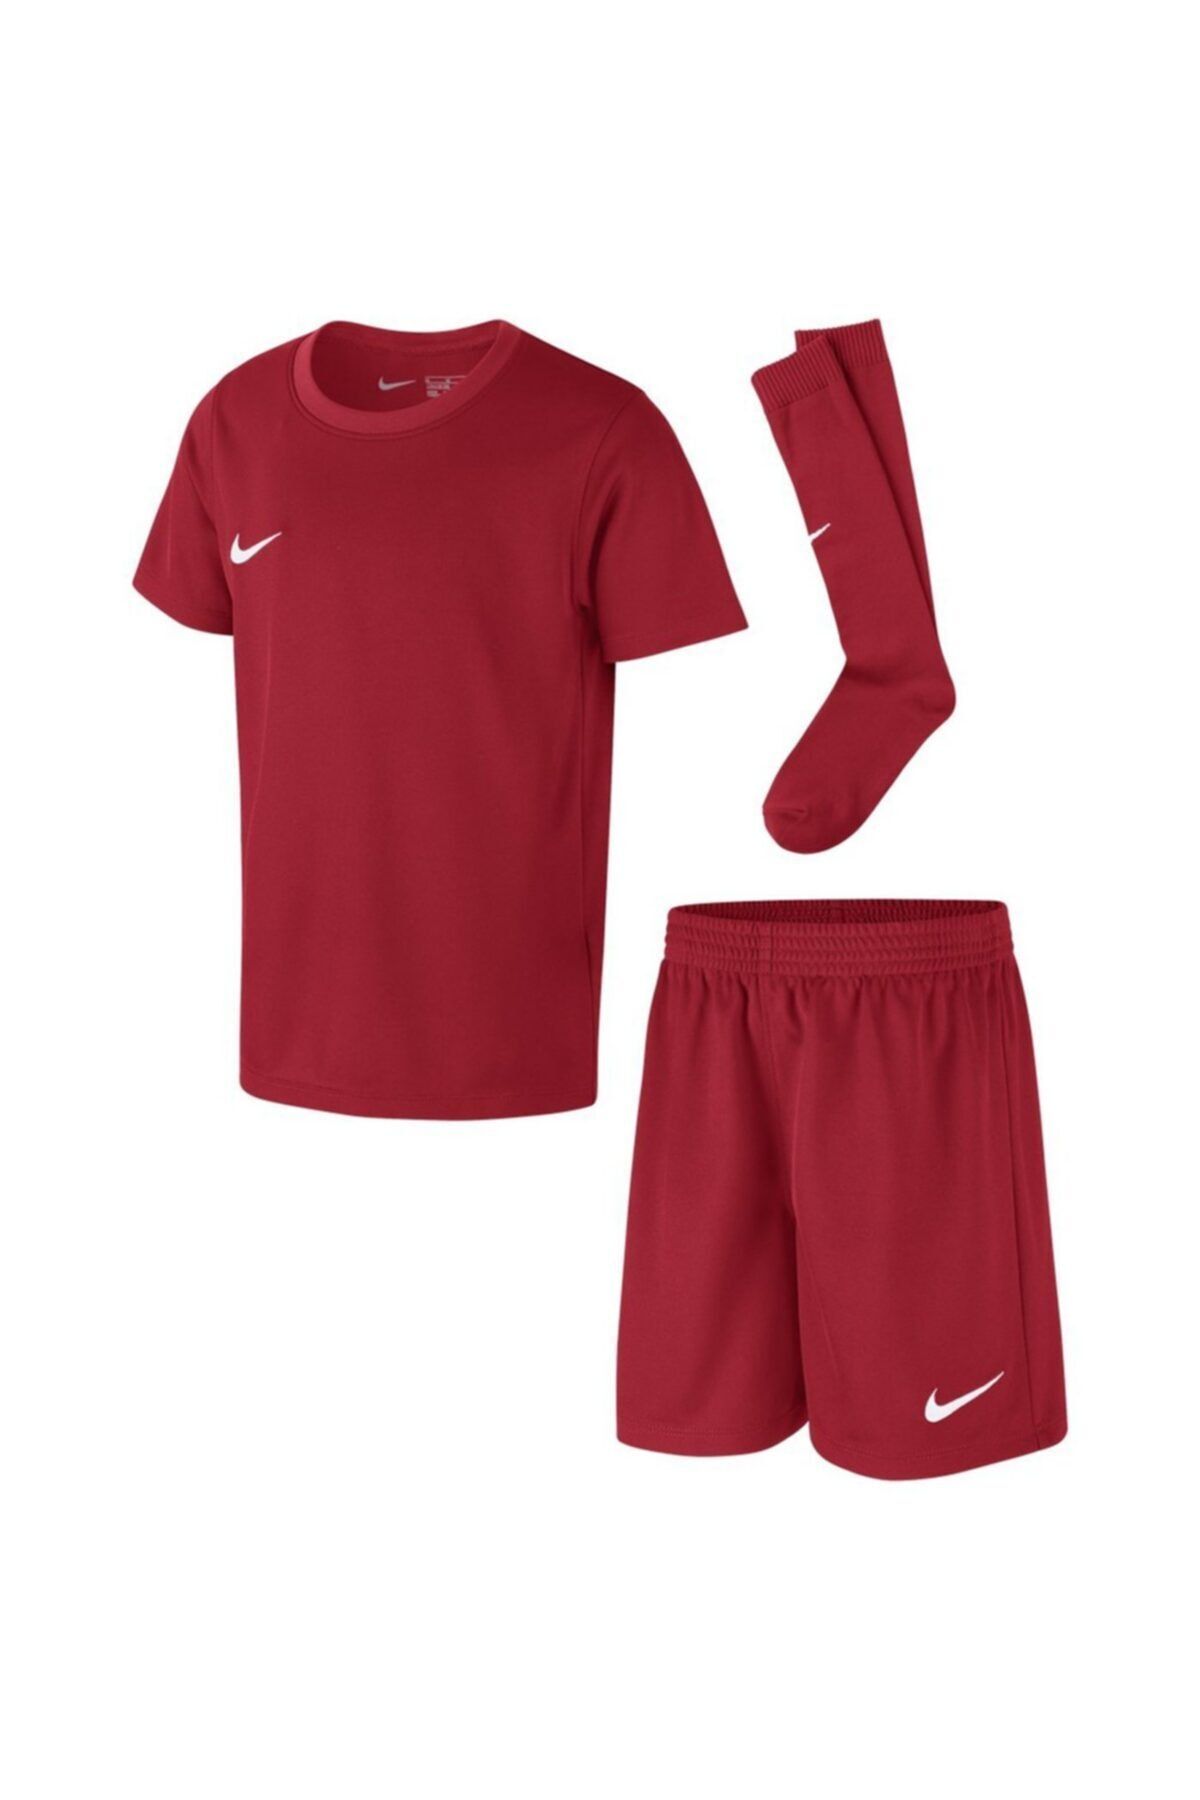 Nike Dry Park20 Kit Set K Çocuk Kırmızı Futbol Forma Takımı Cd2244-657